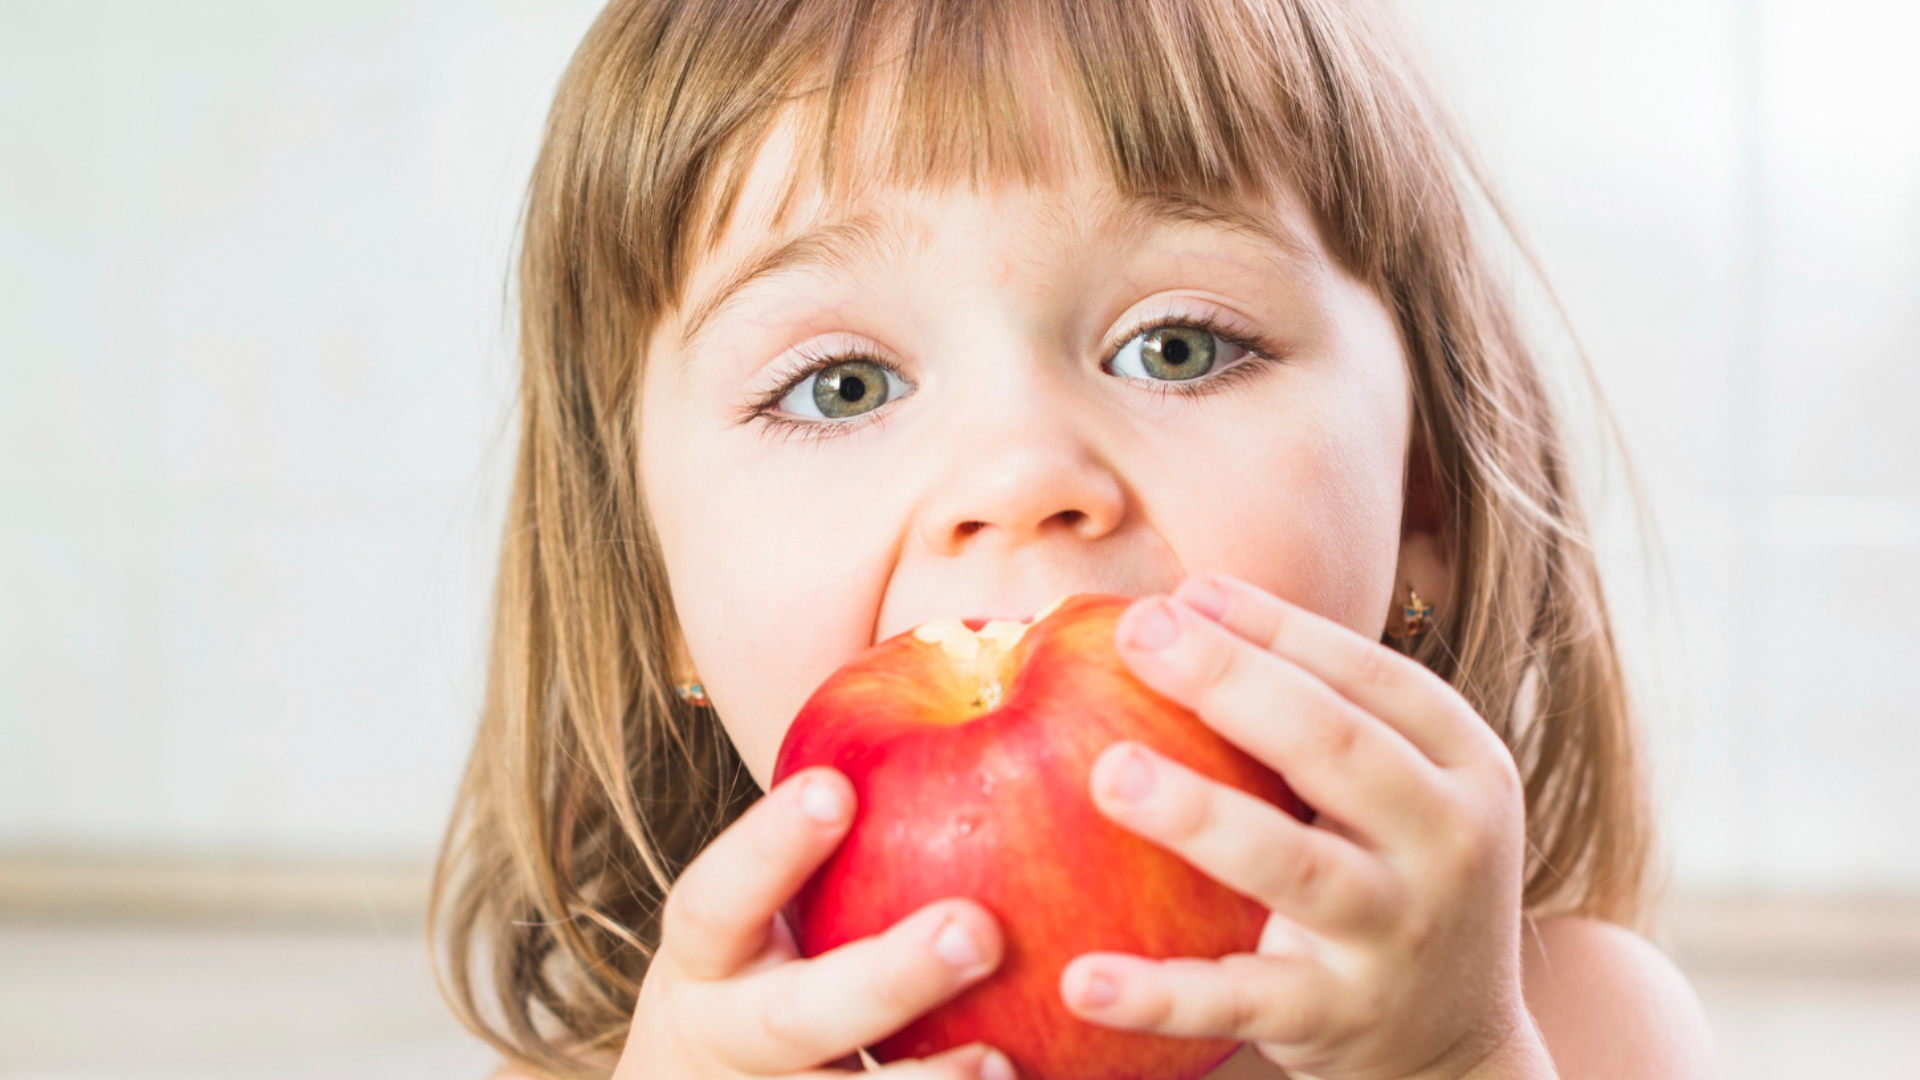 Ensinando a criança a comer melhor: dicas para te ajudar